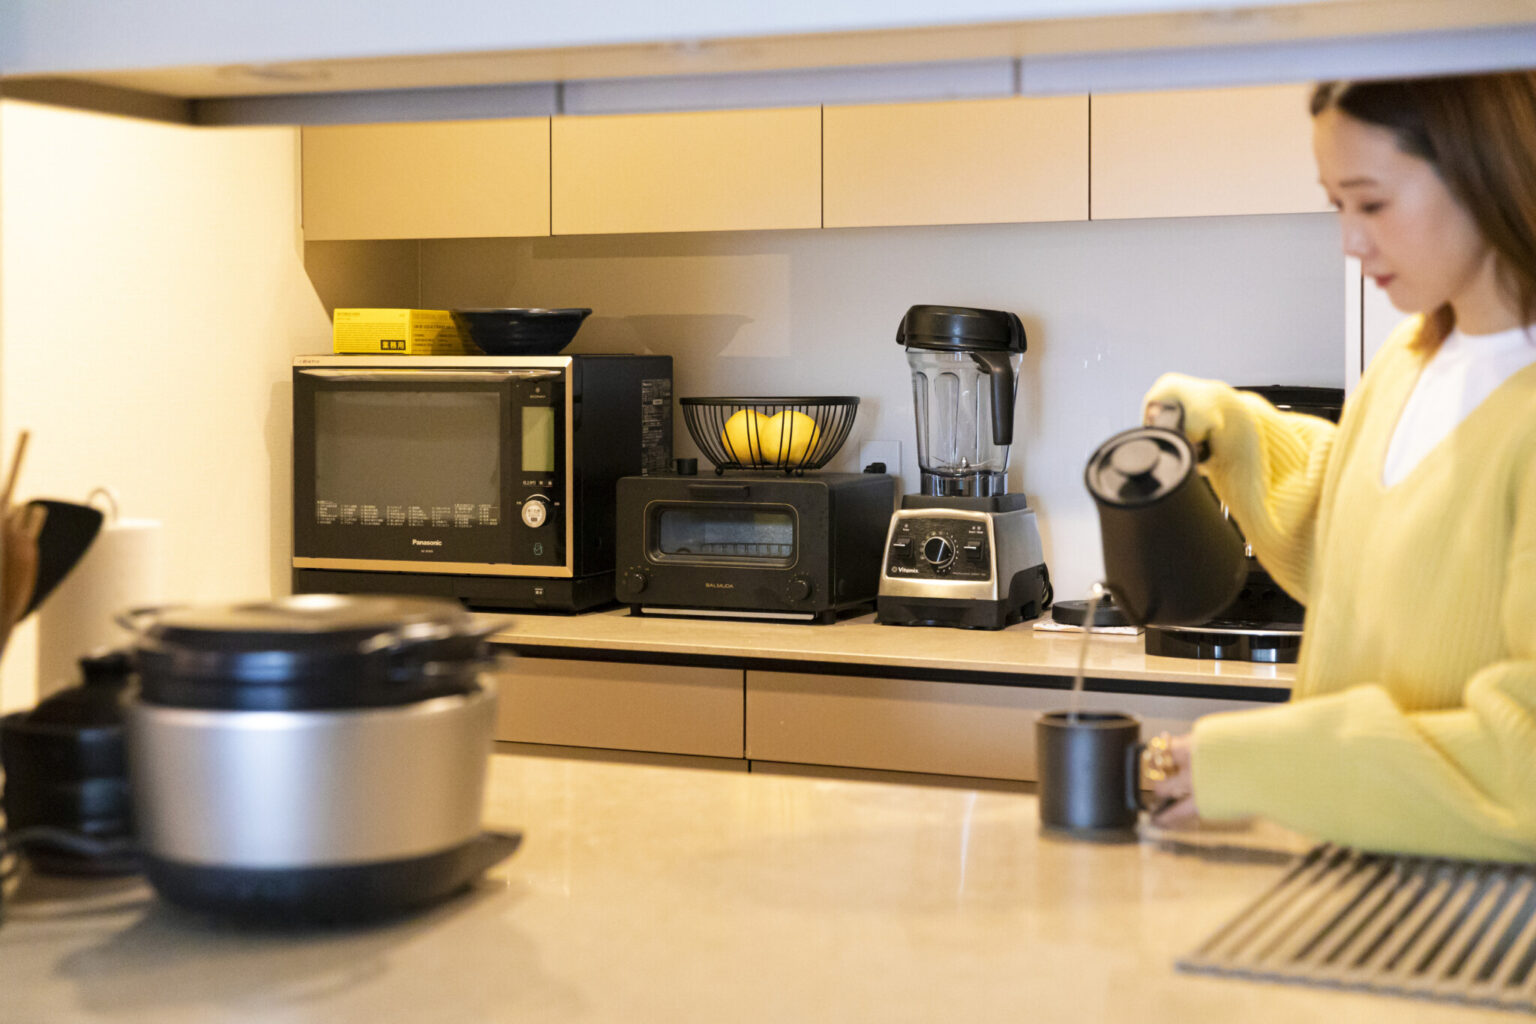 キッチン家電はブラックとシルバーでスタイリッシュに統一。